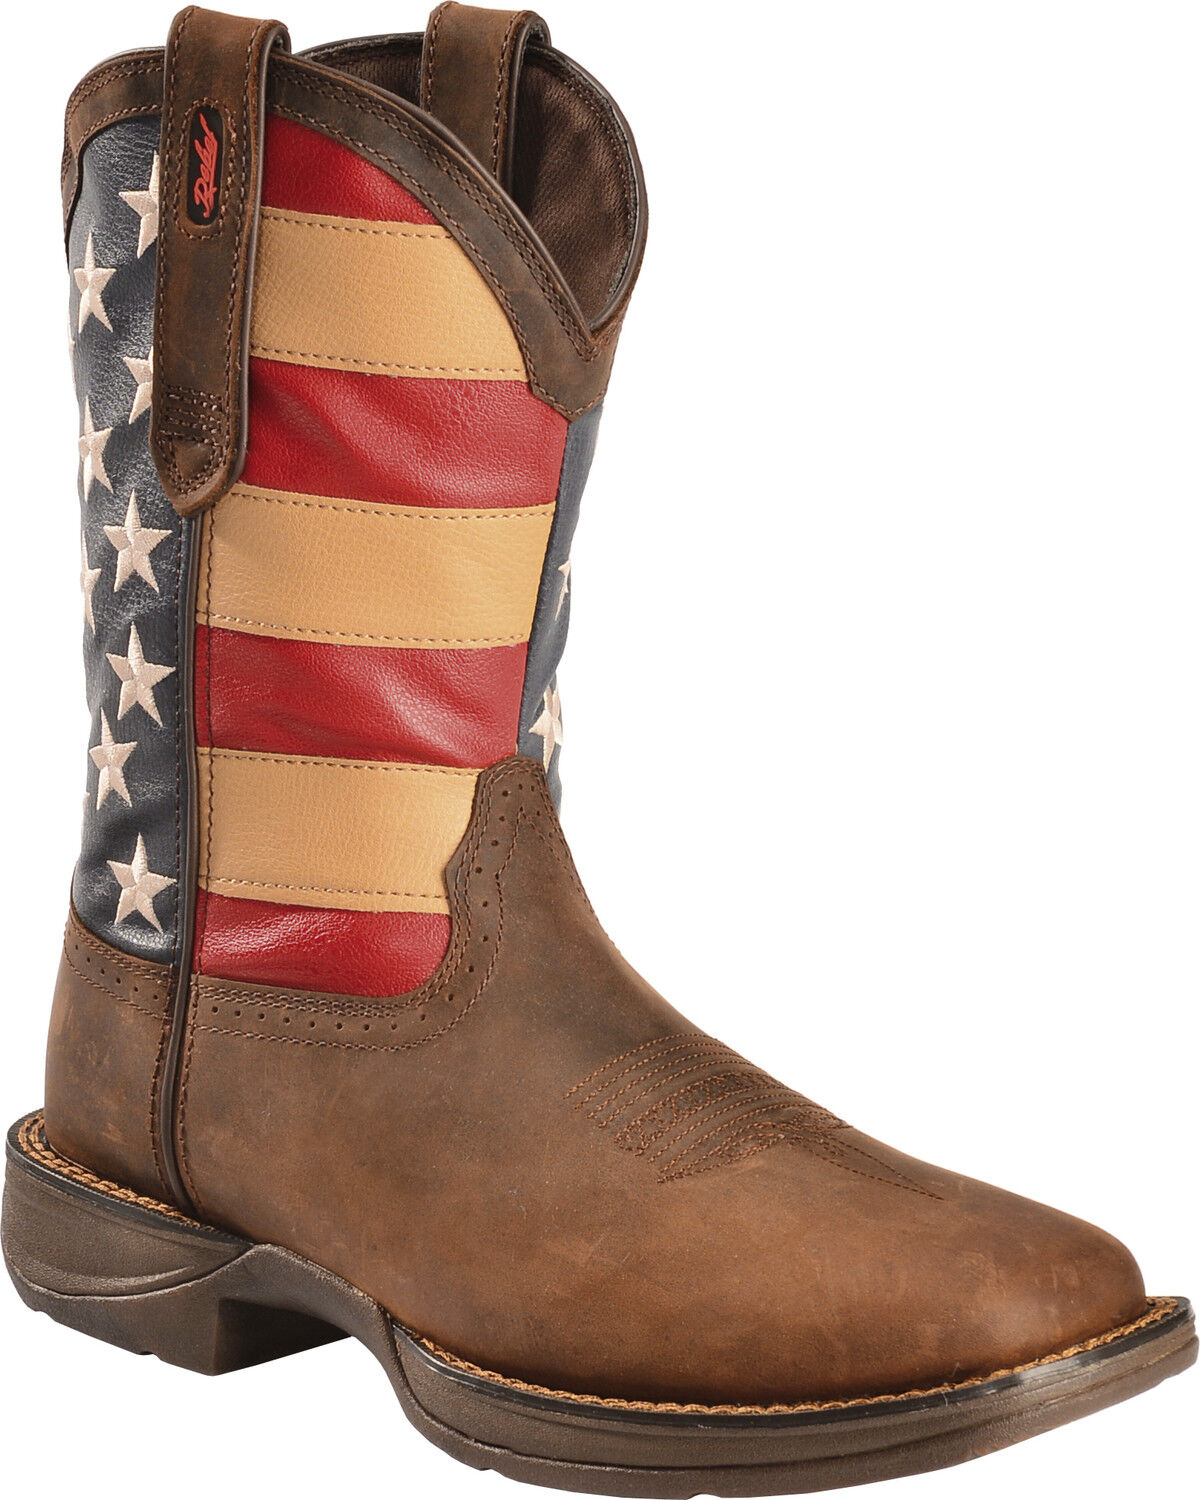 roper confederate flag boots